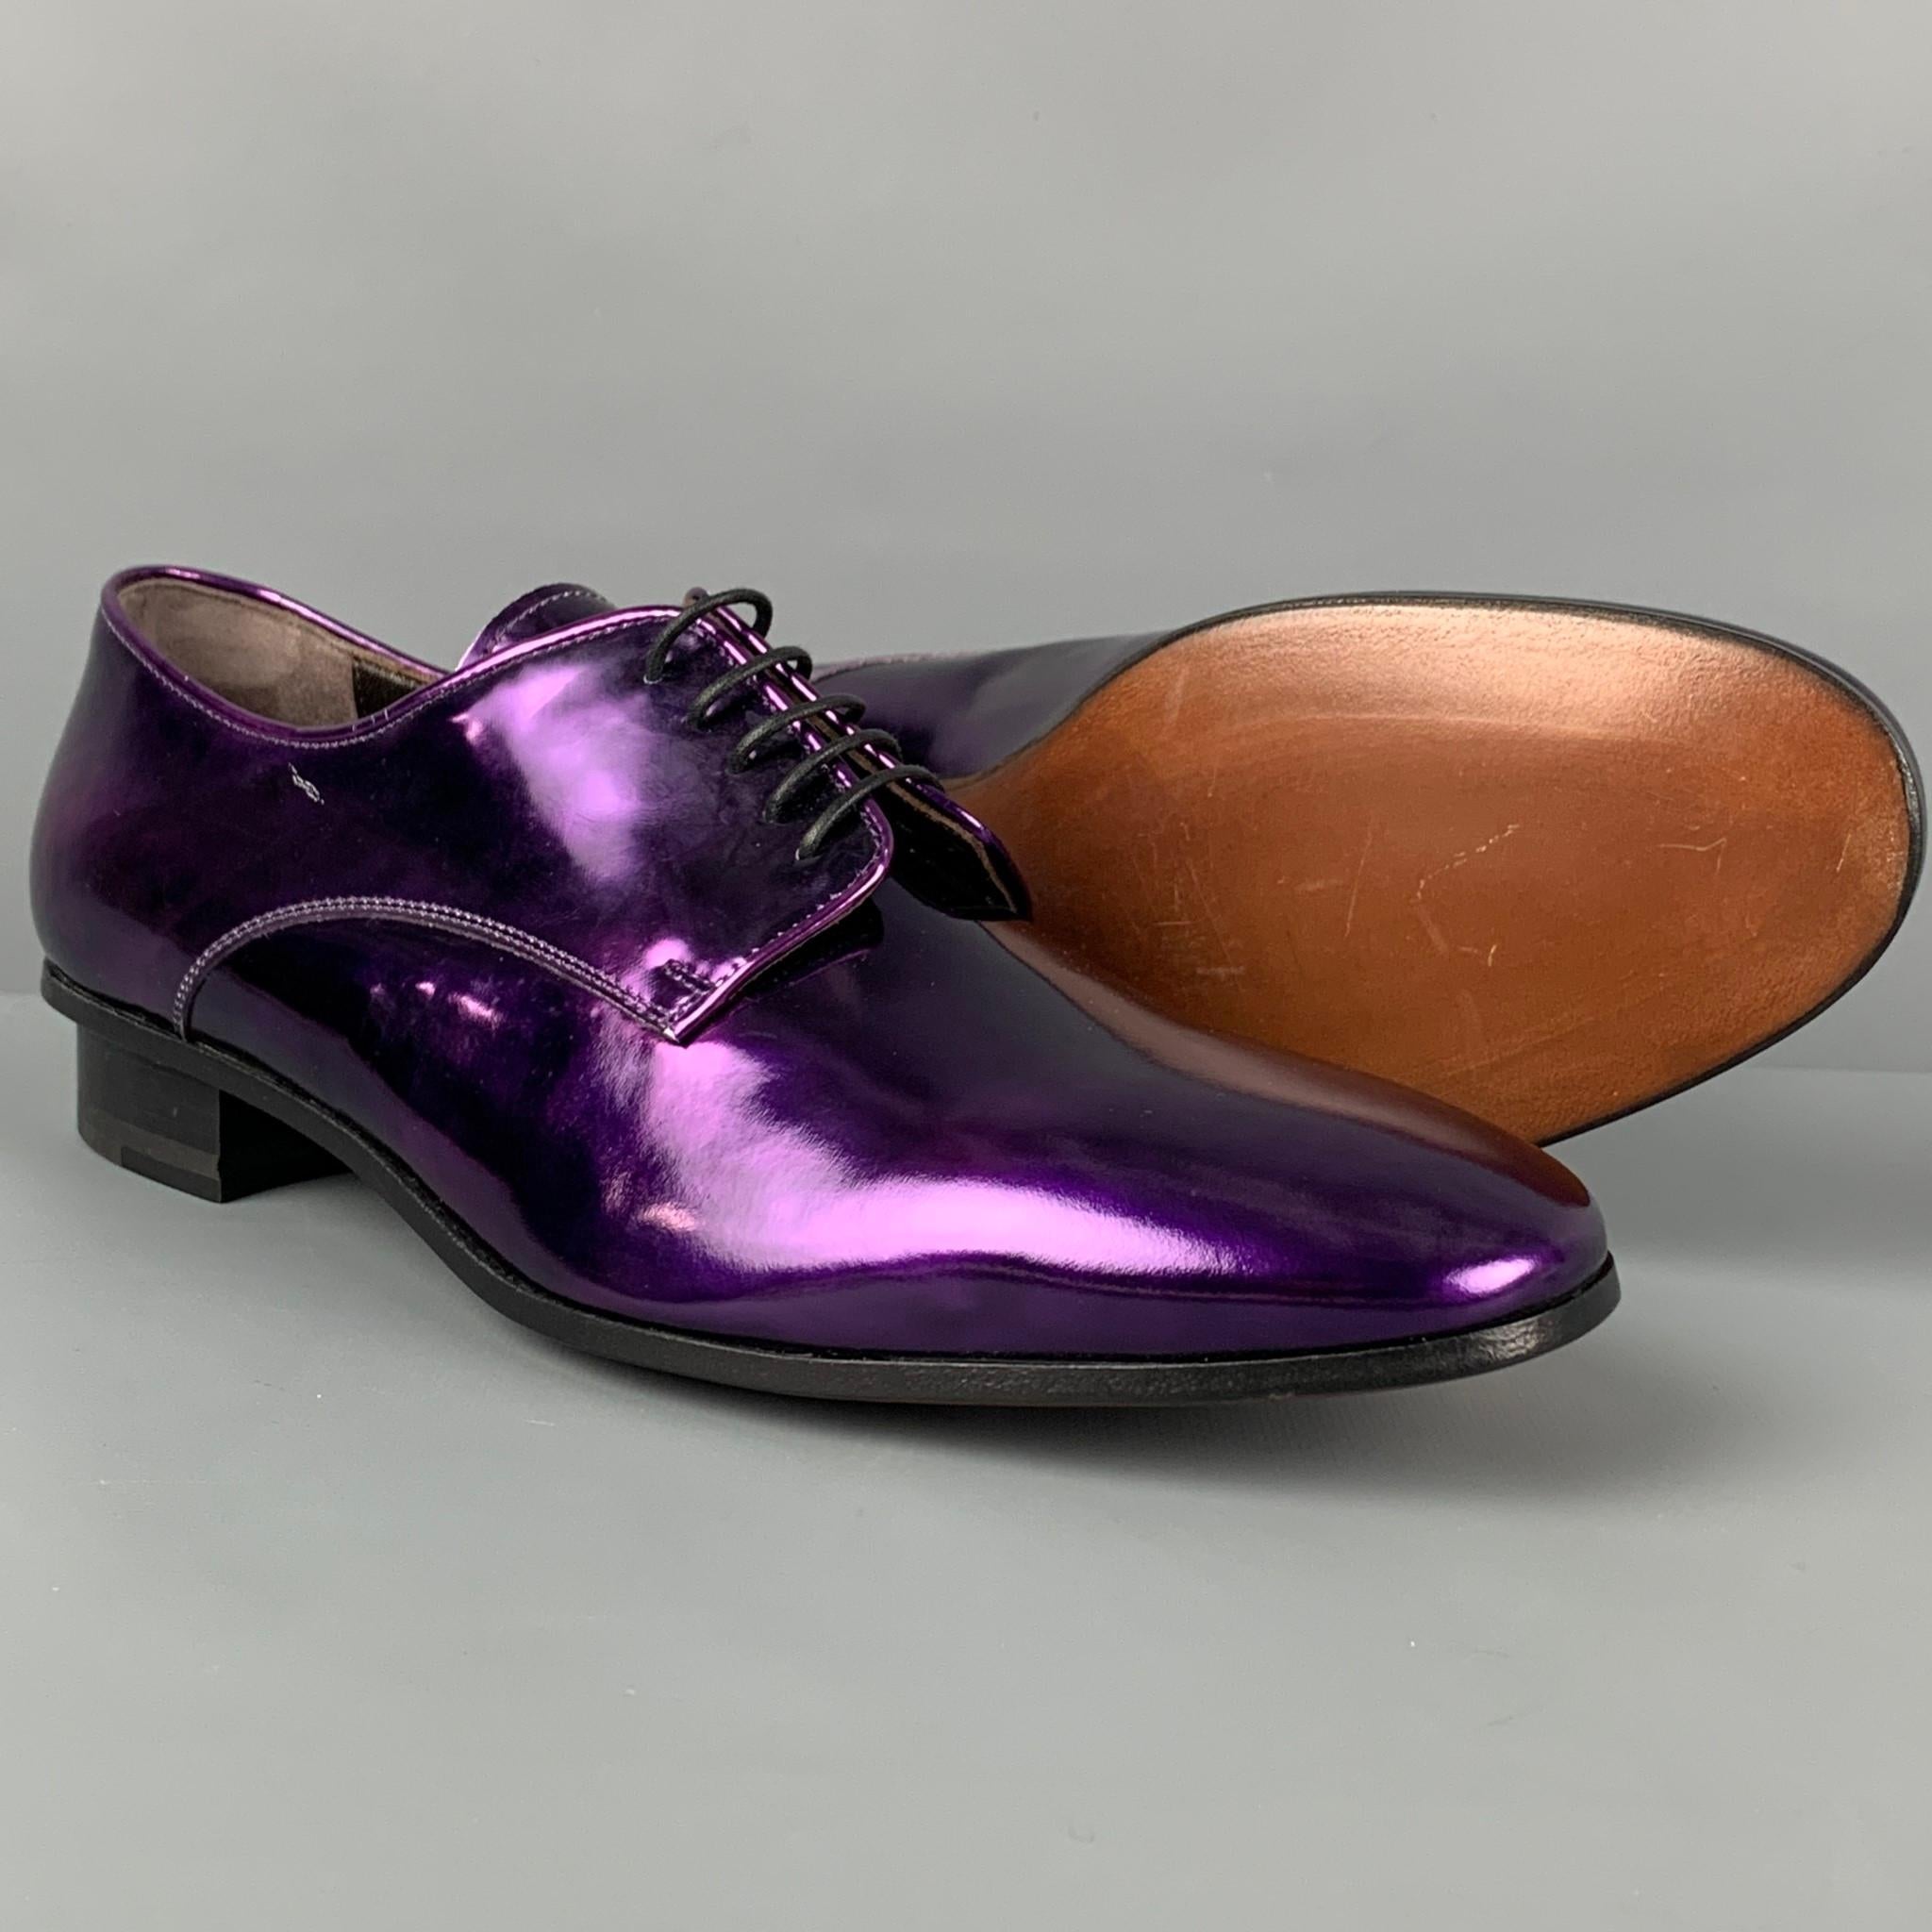 lanvin shoes purple